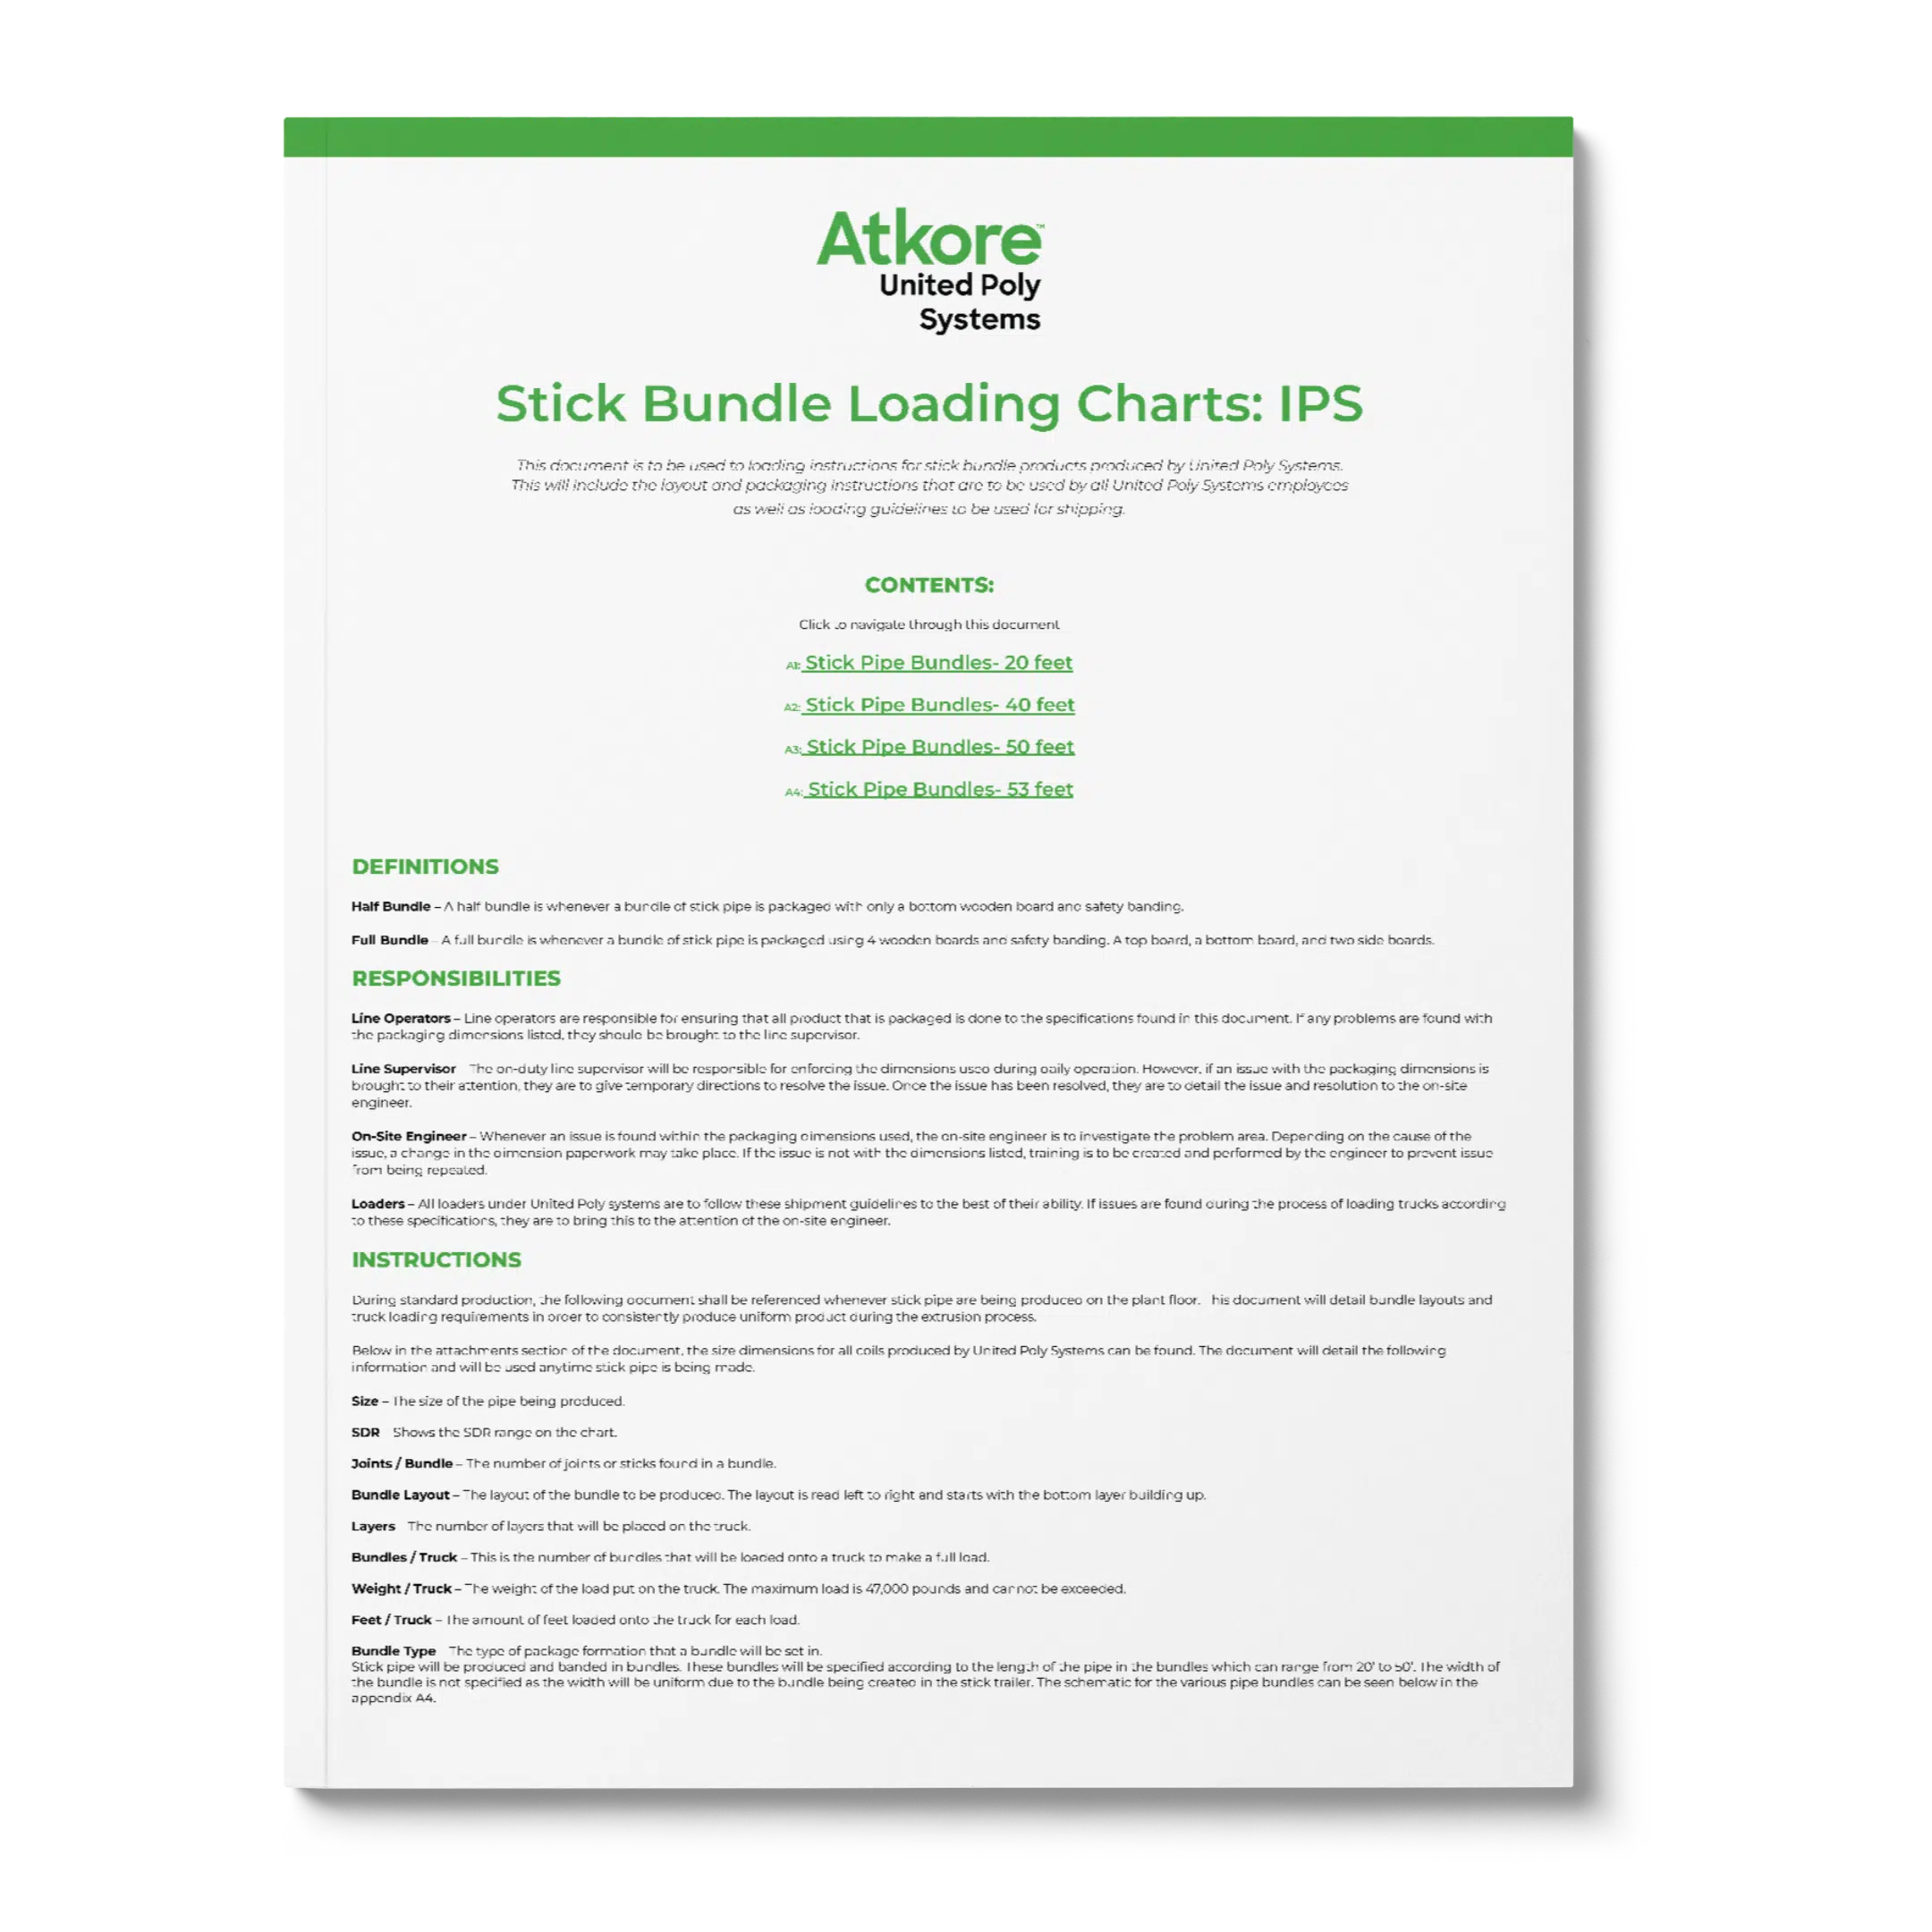 UPS Atkore_Stick Bundle Loading Charts_ IPSTHUMB